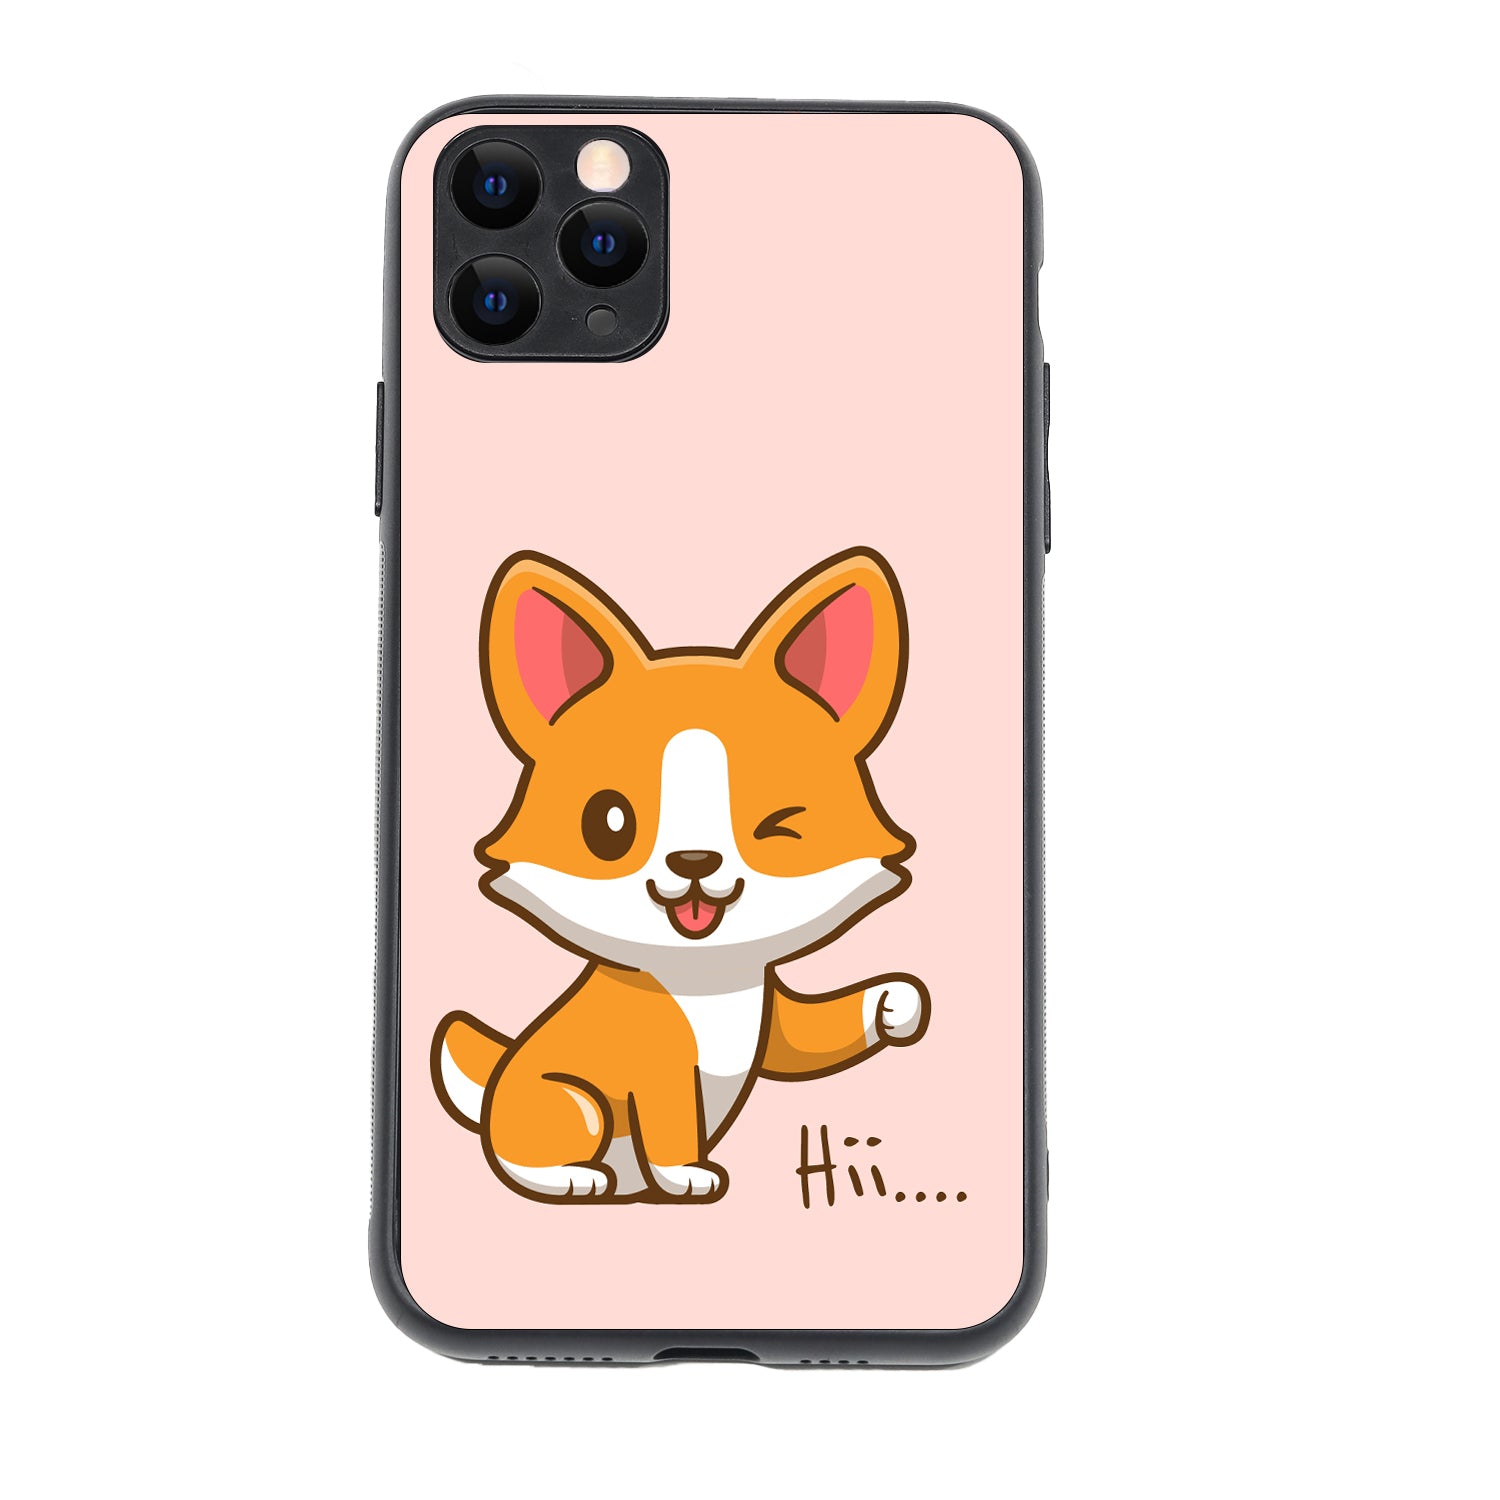 Hi Cute Bff iPhone 11 Pro Max Case